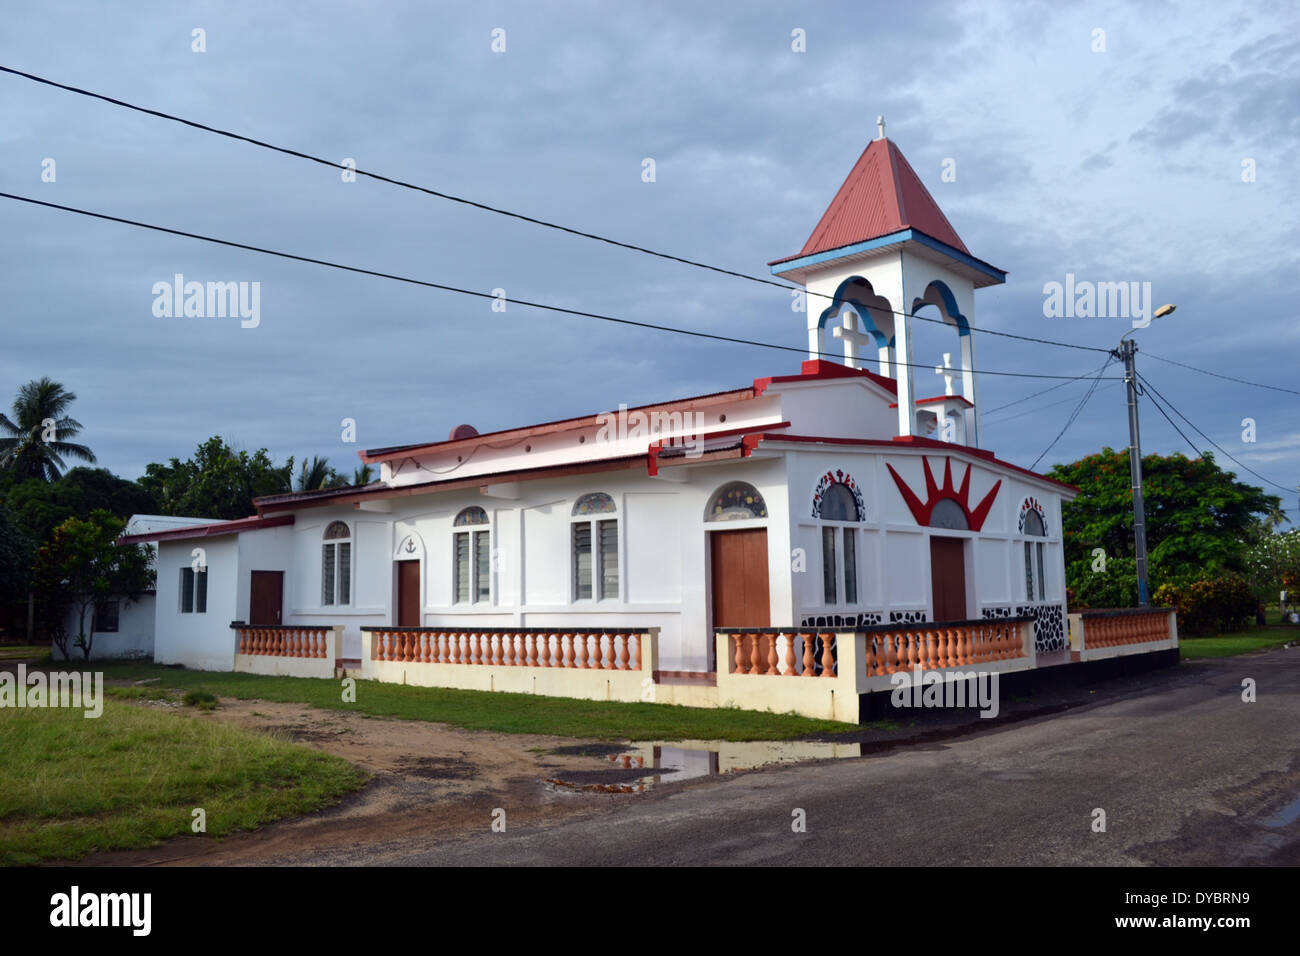 Petite chapelle à Matautu, Wallis Island, Wallis et Futuna, de la Mélanésie, Pacifique Sud Banque D'Images